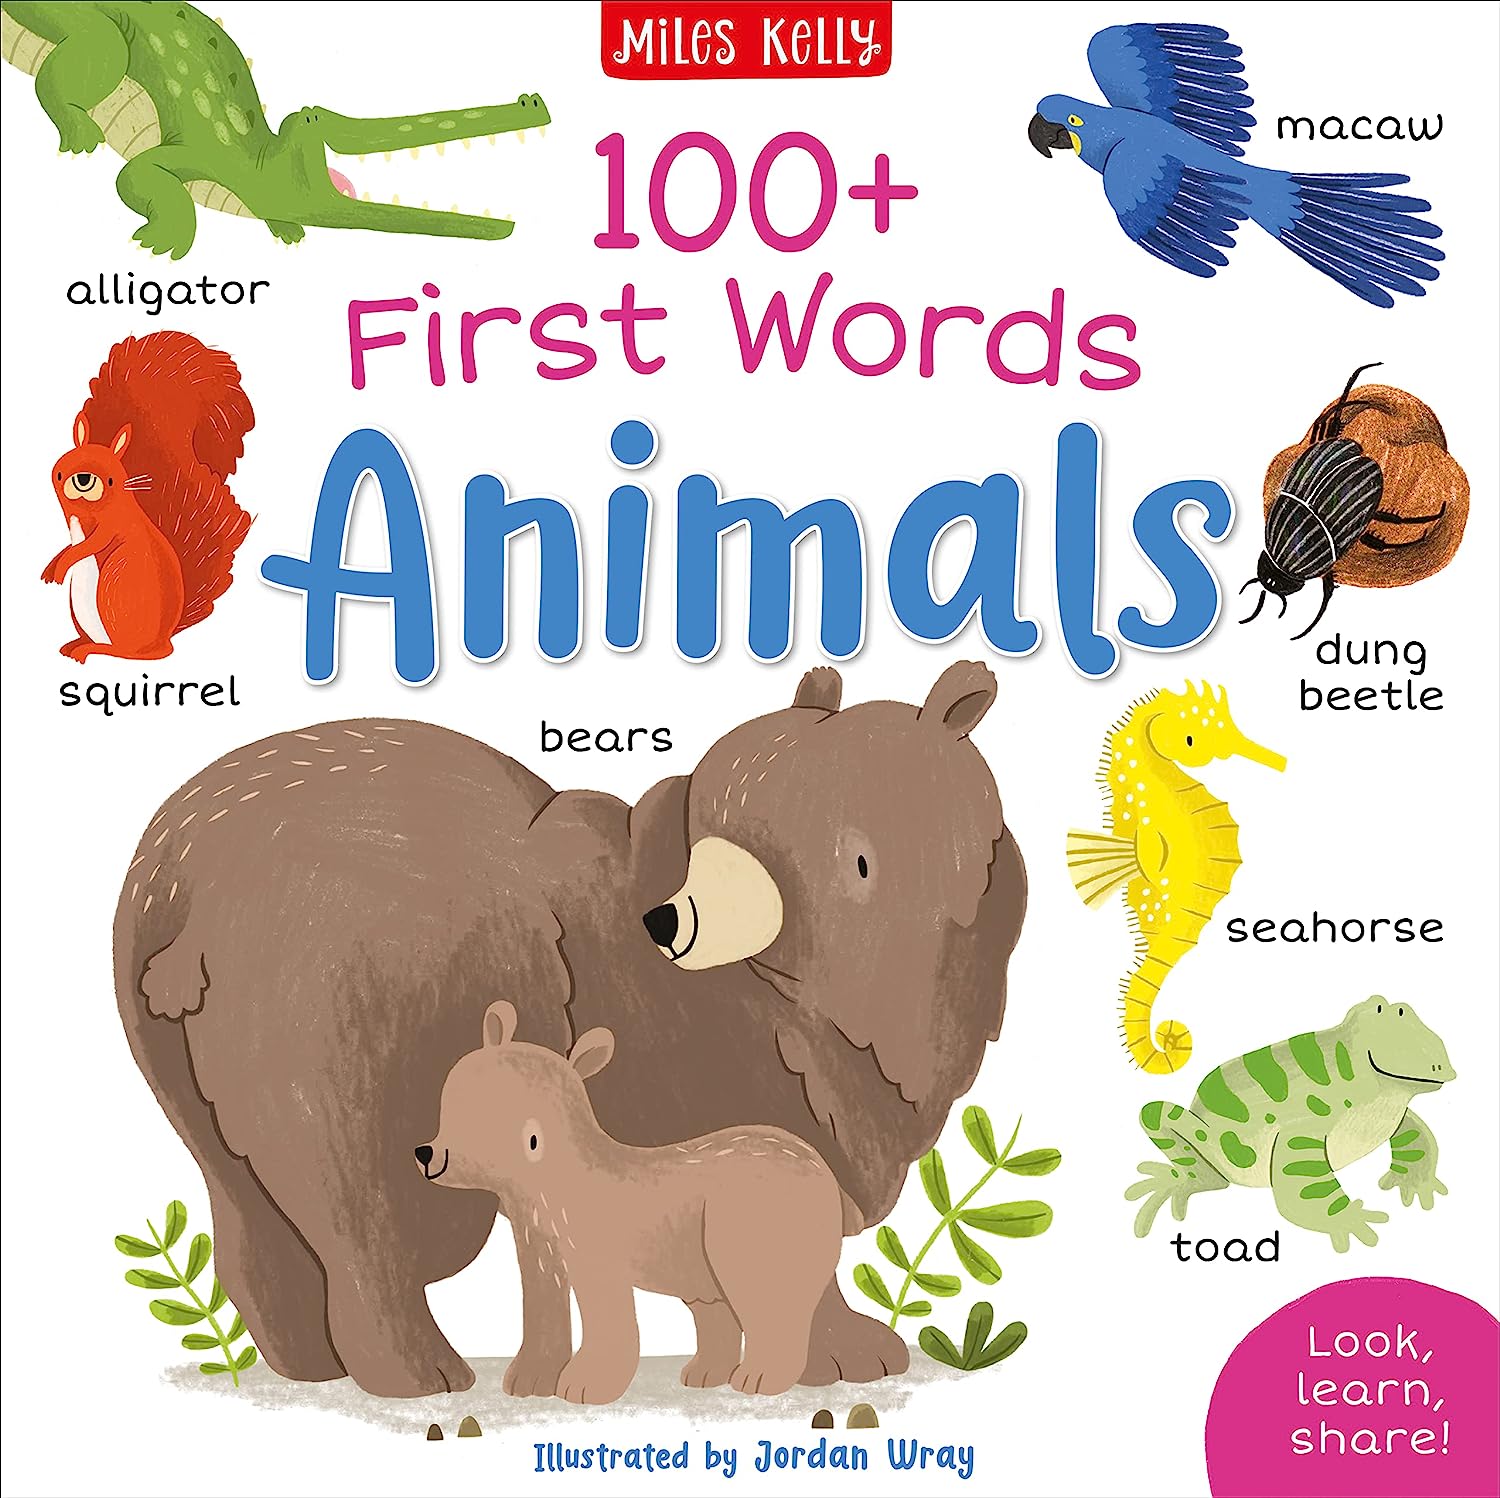 100+ First Words: Animals